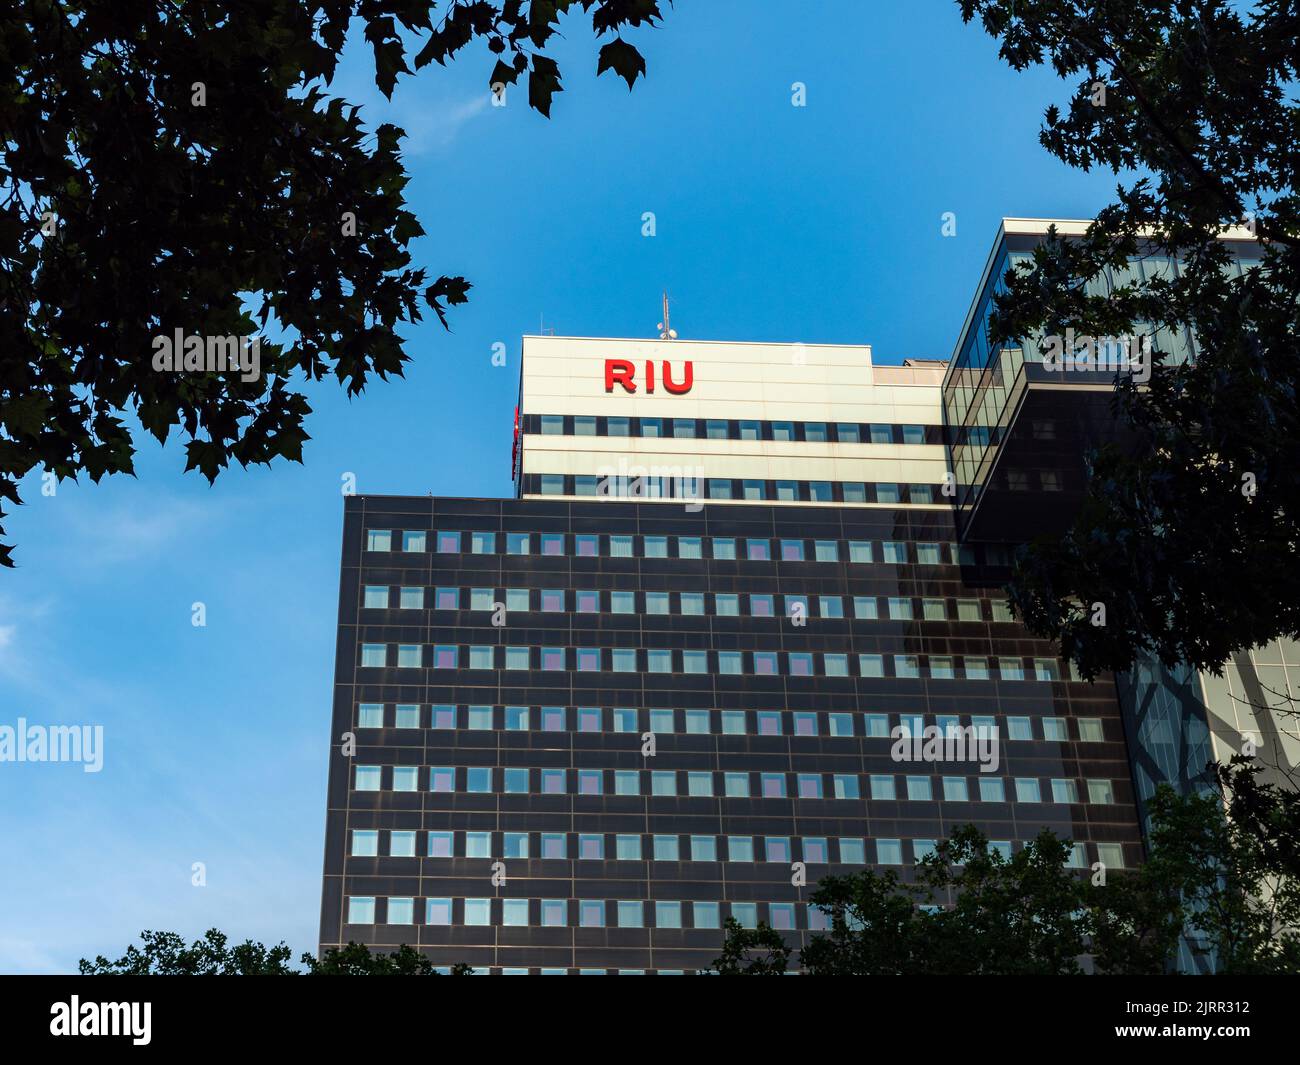 Hotel Riu Plaza dans le centre-ville de Berlin. Bâtiment moderne à la façade sombre. Le logo Riu est sur la façade. Hôtel urbain pour les touristes et les affaires Banque D'Images